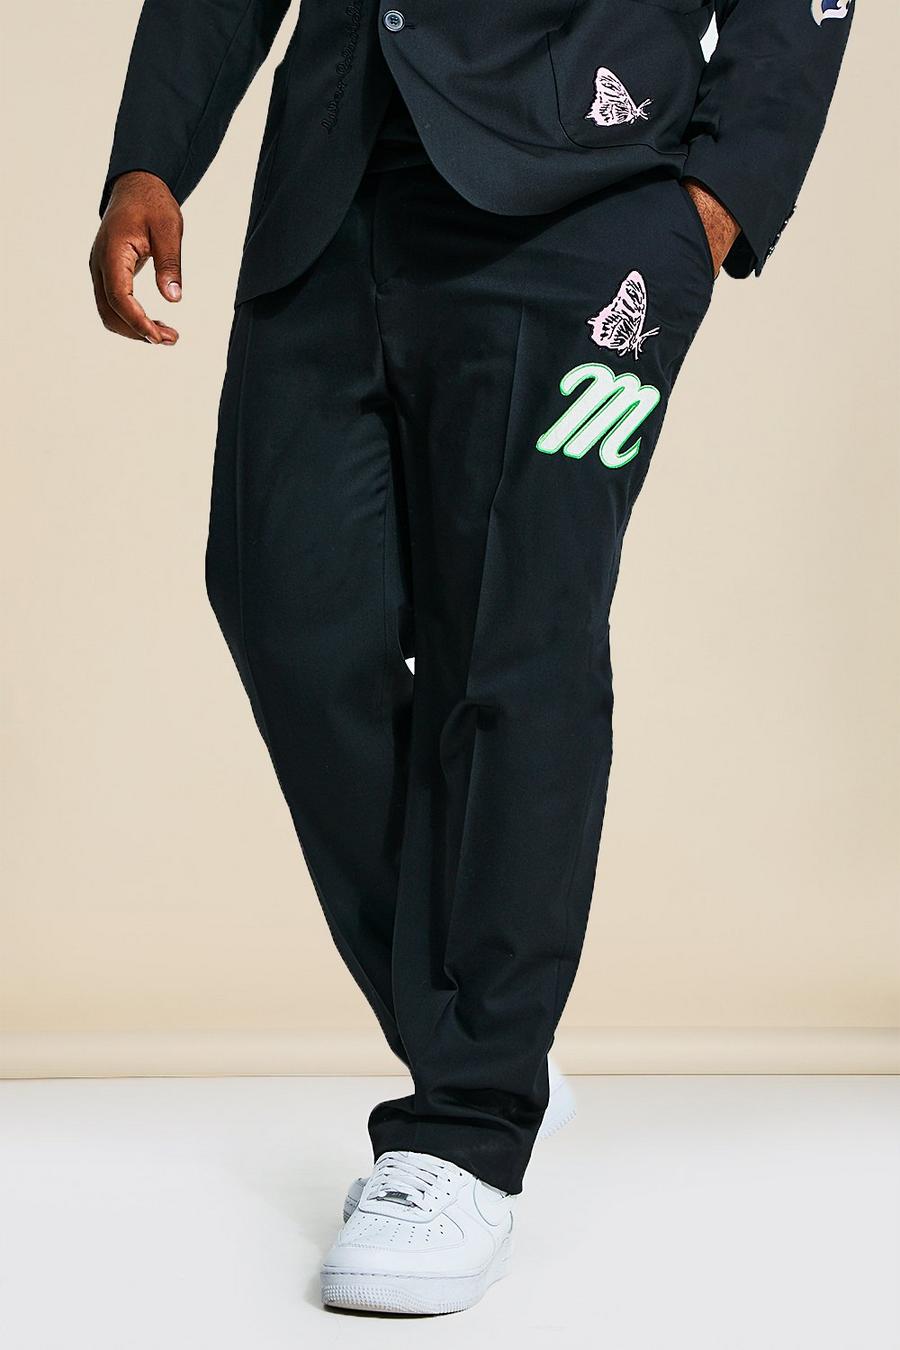 שחור negro מכנסי חליפה בגזרת סקיני בסגנון נבחרת ספורט מידות גדולות 